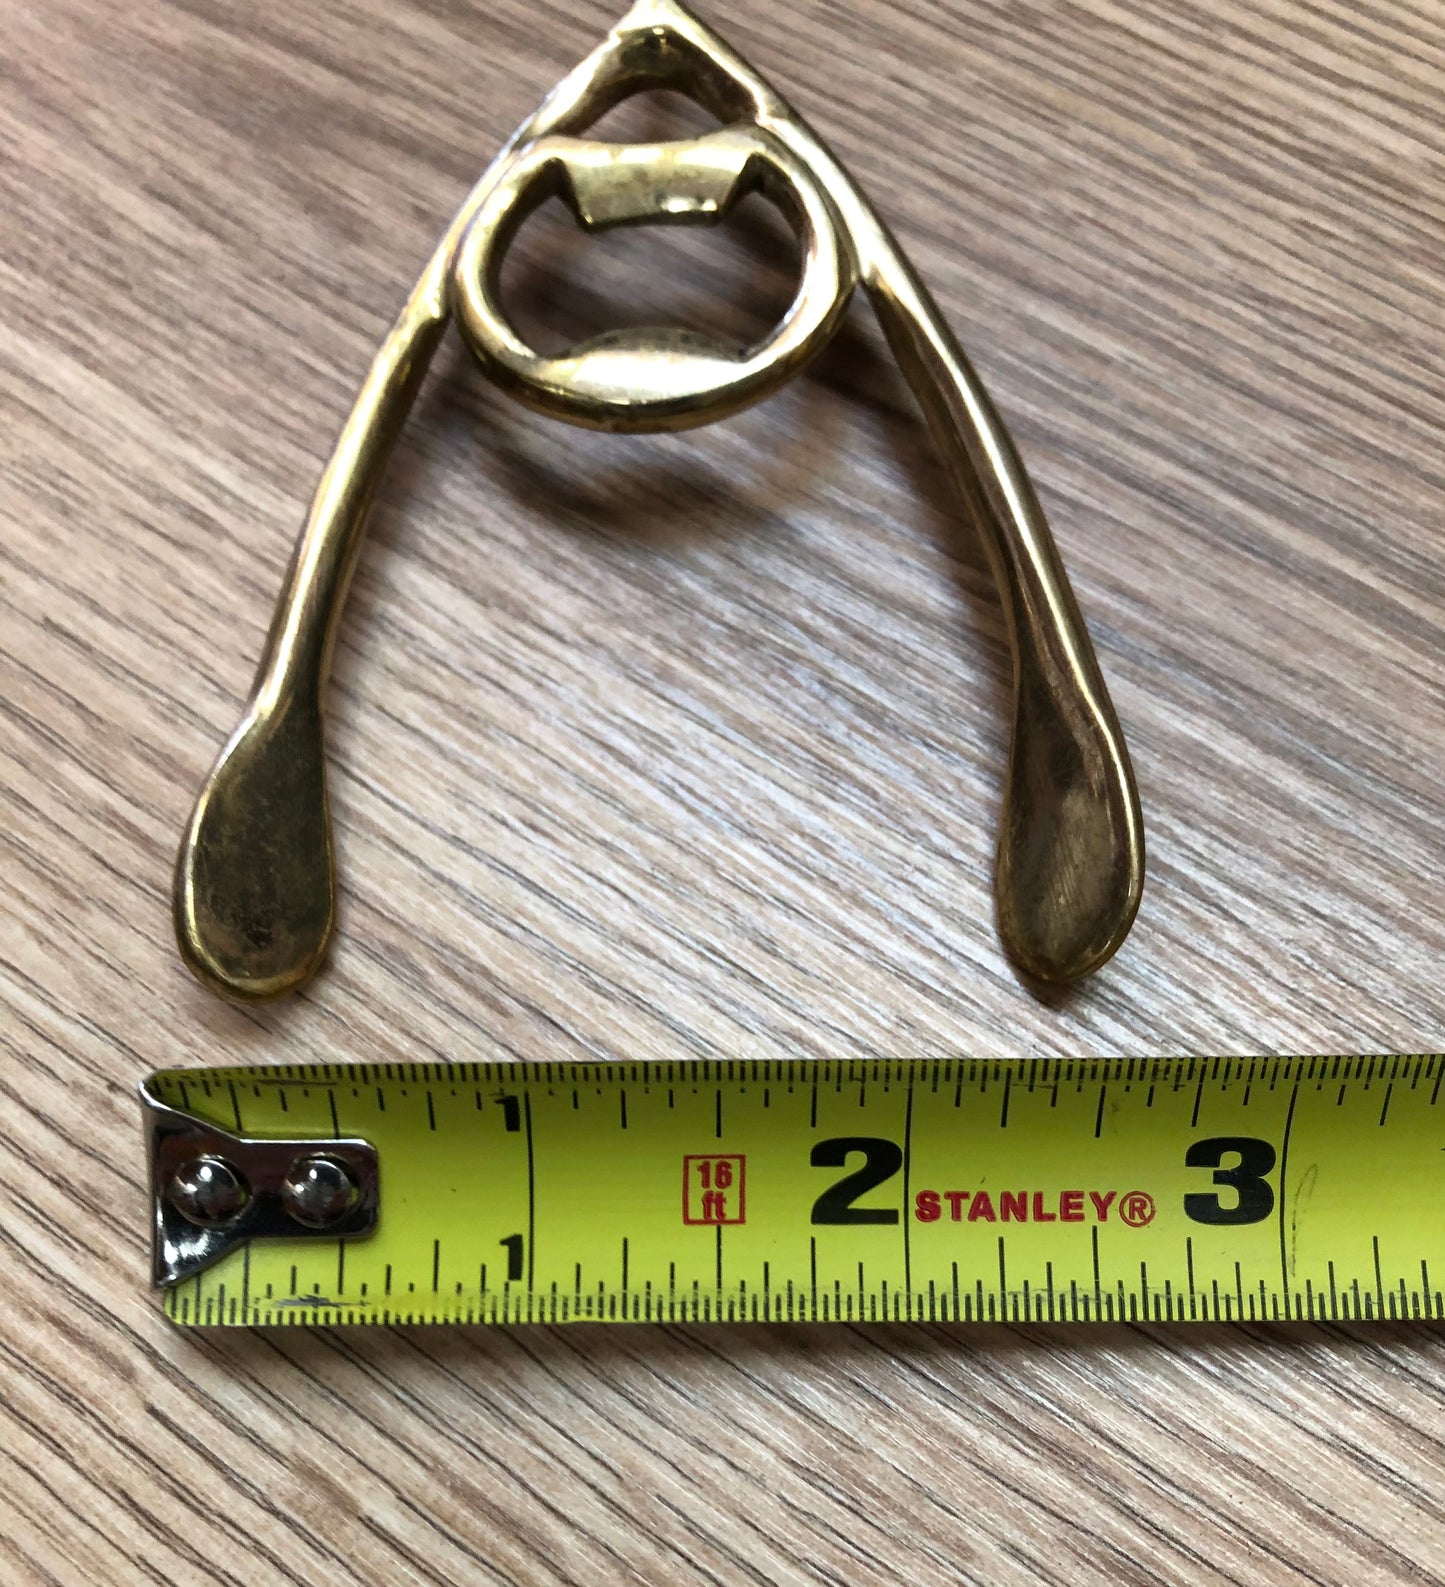 Brass wishbone bottle opener